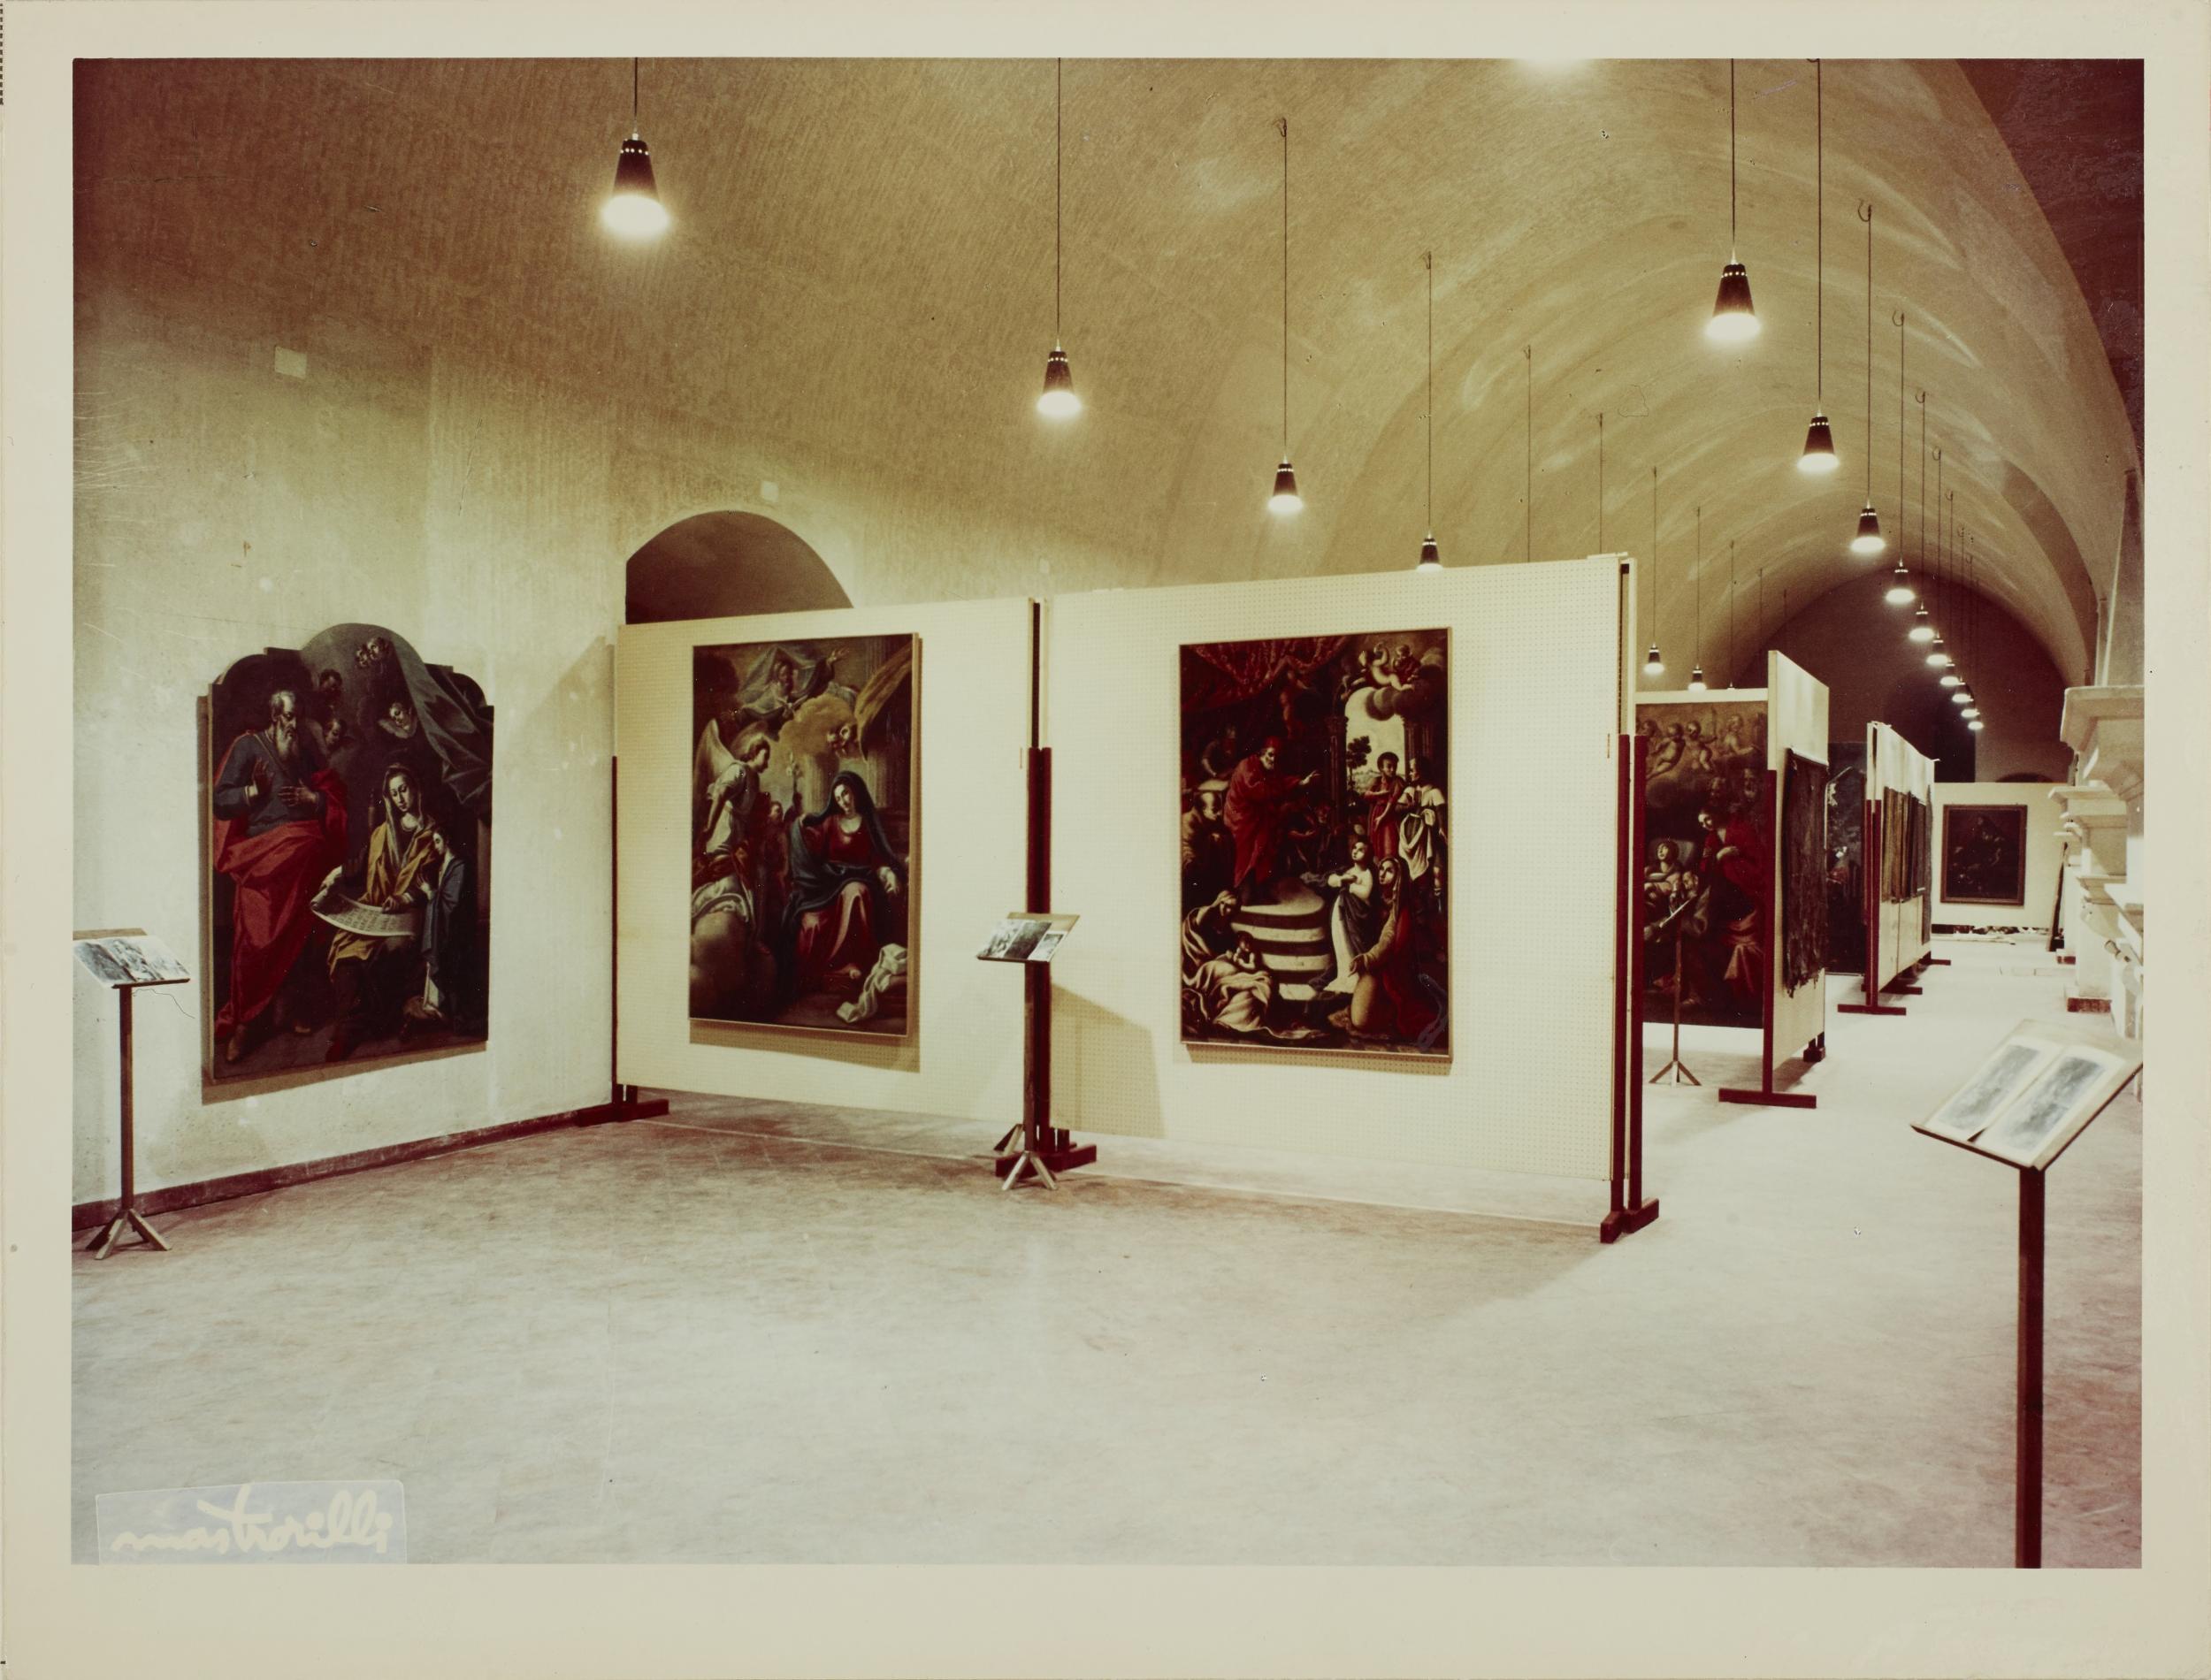 Mastorilli, Bari - Castello Svevo, allestimento della mostra per la XI settimana dei musei, 1968, gelatina ai sali d'argento/carta, MPI136581